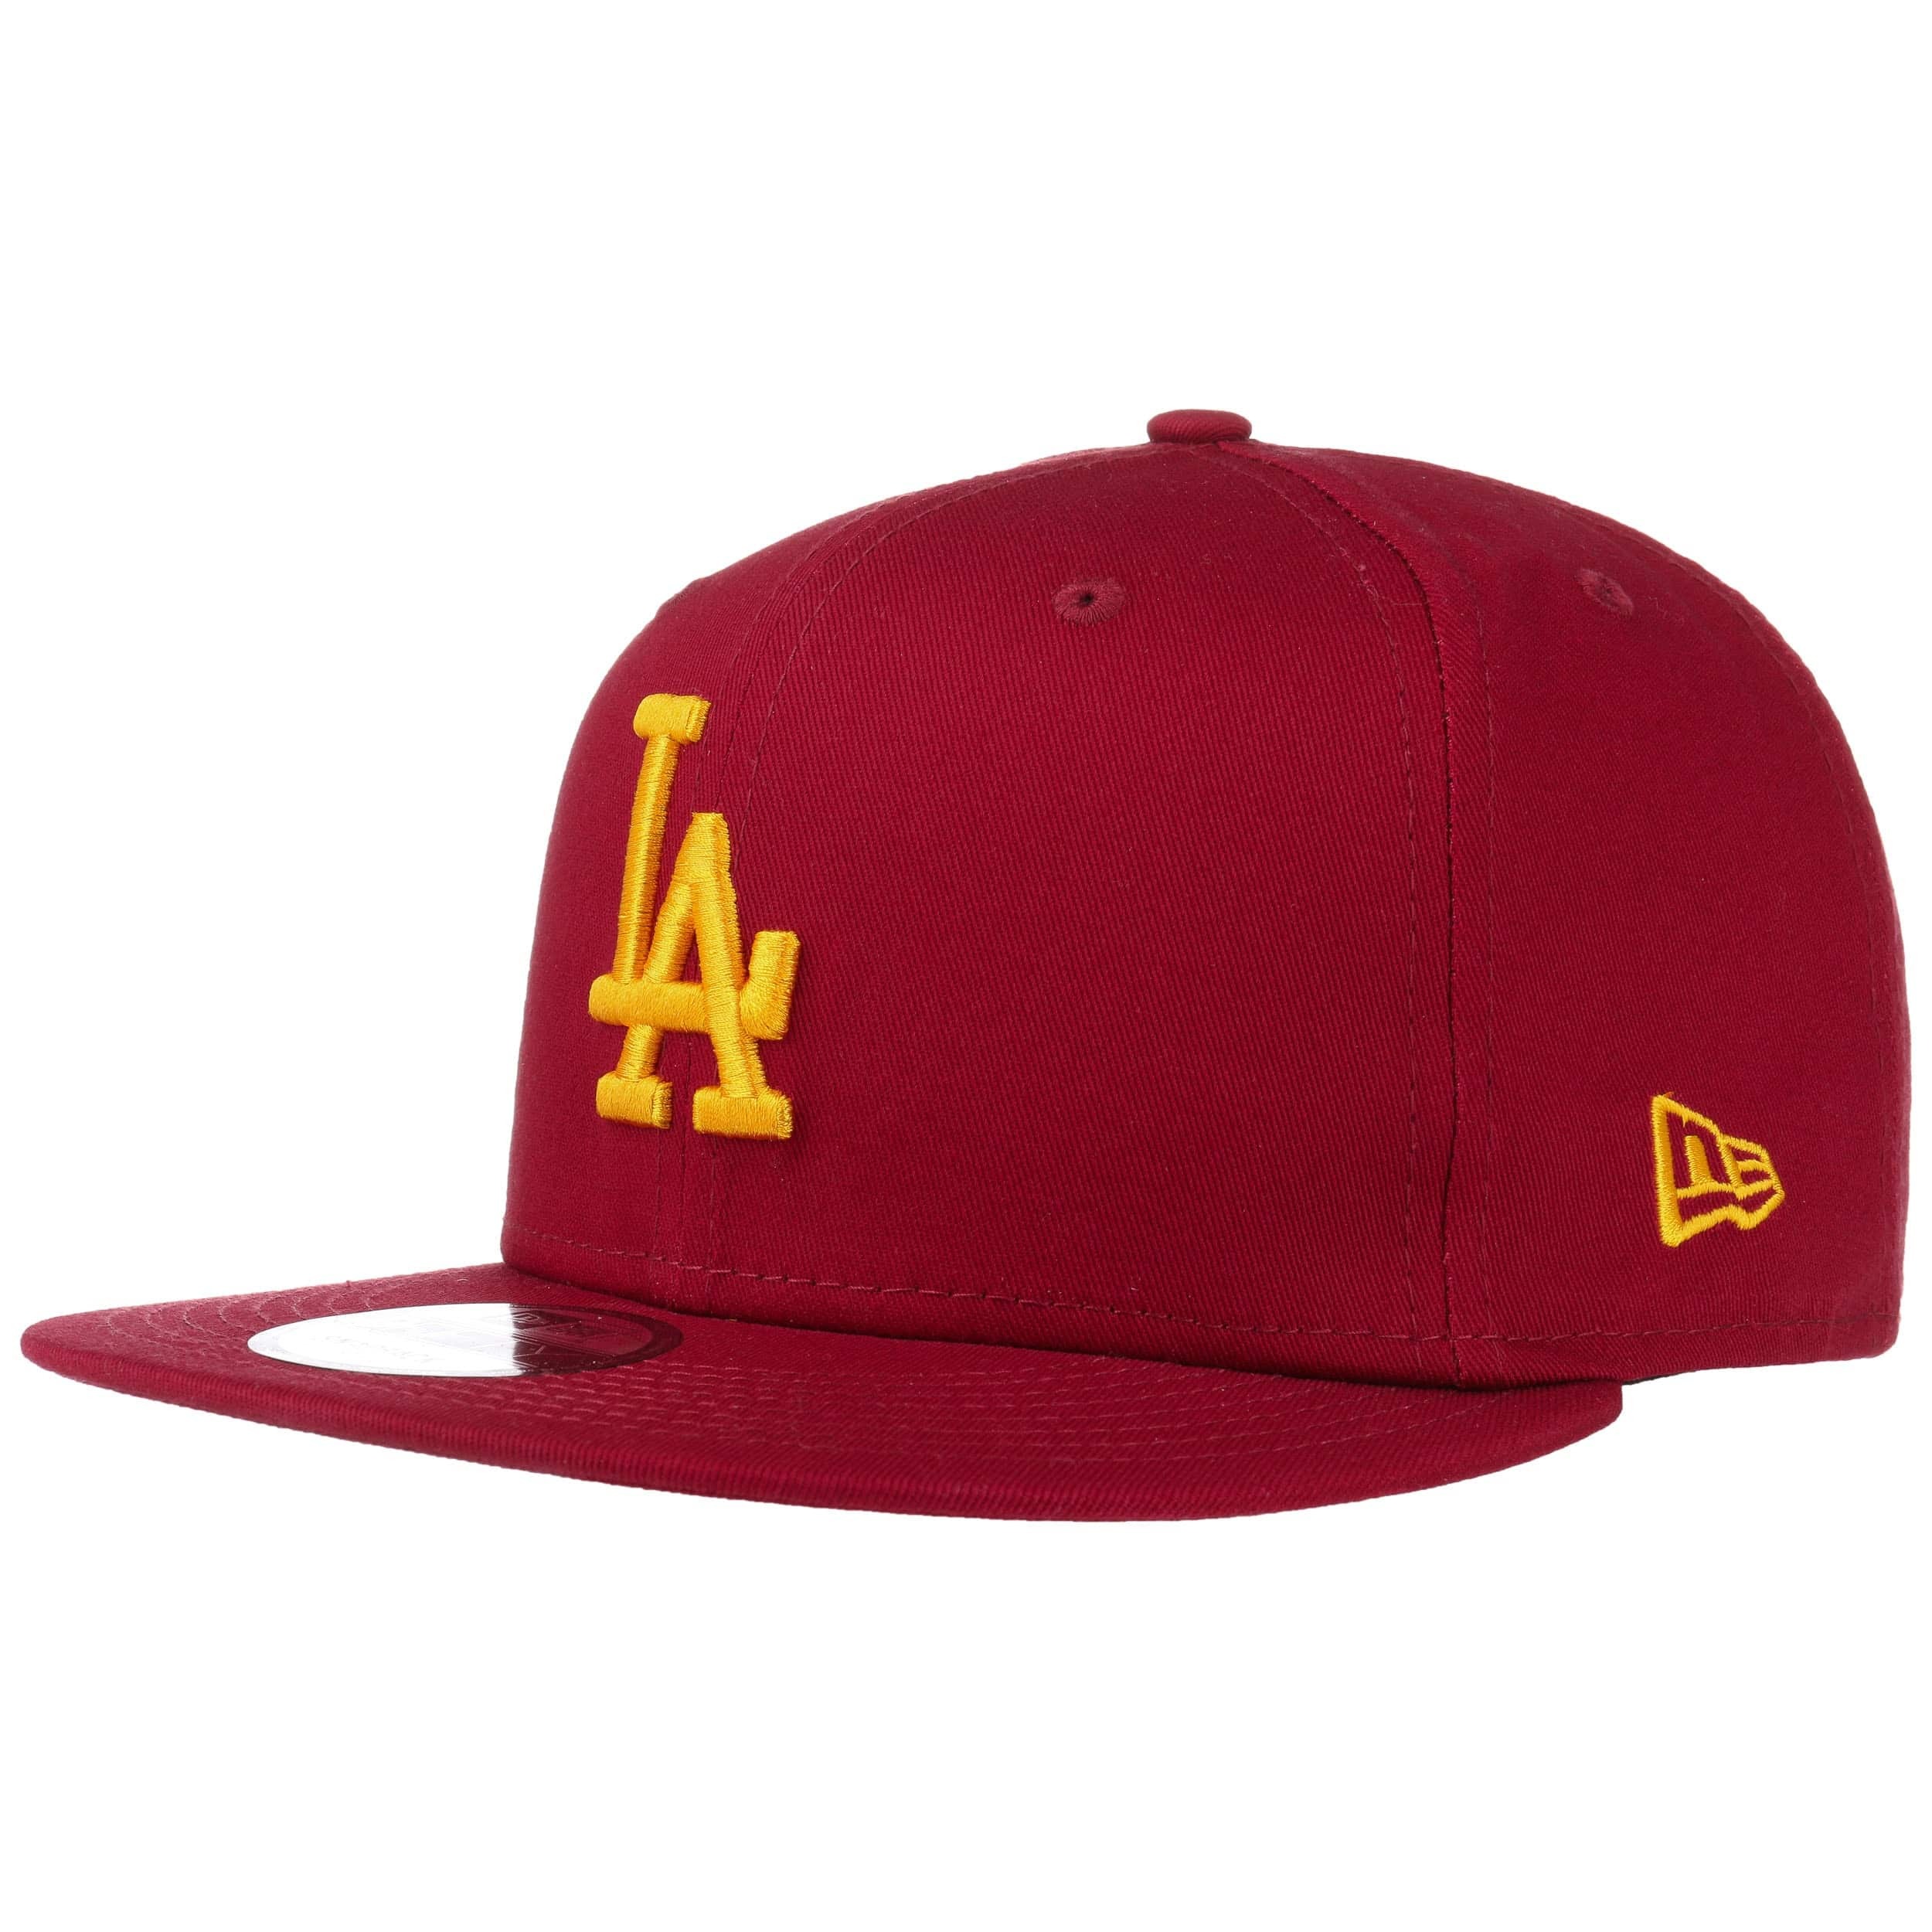 New Era LA Dodgers Cardinal Gold